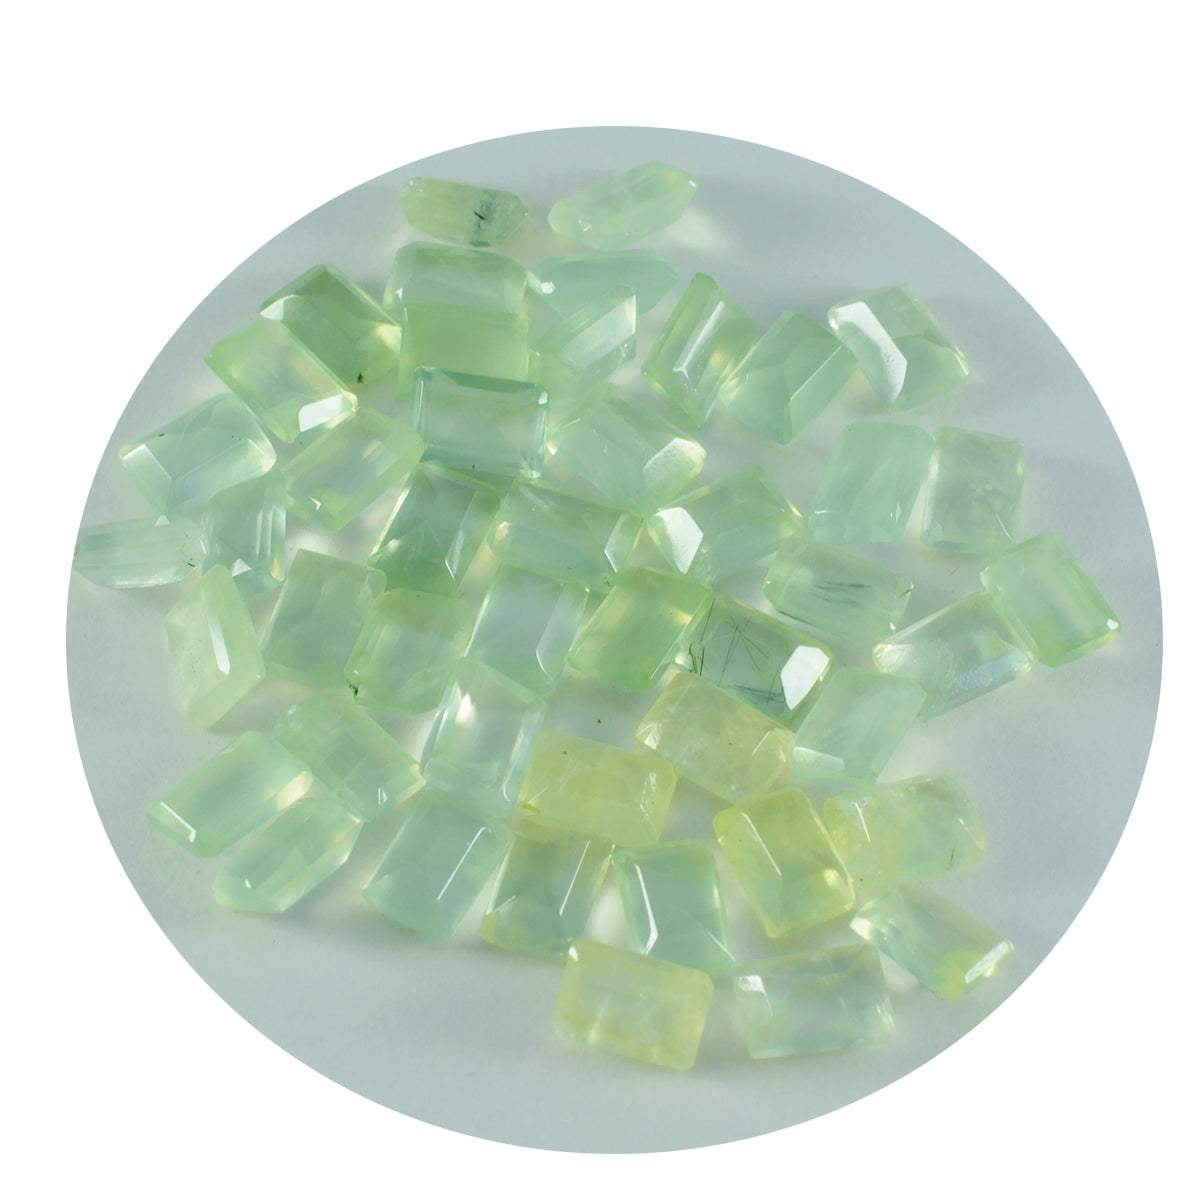 Riyogems 1PC groene prehniet gefacetteerde 3x5 mm achthoekige vorm edelsteen van uitstekende kwaliteit